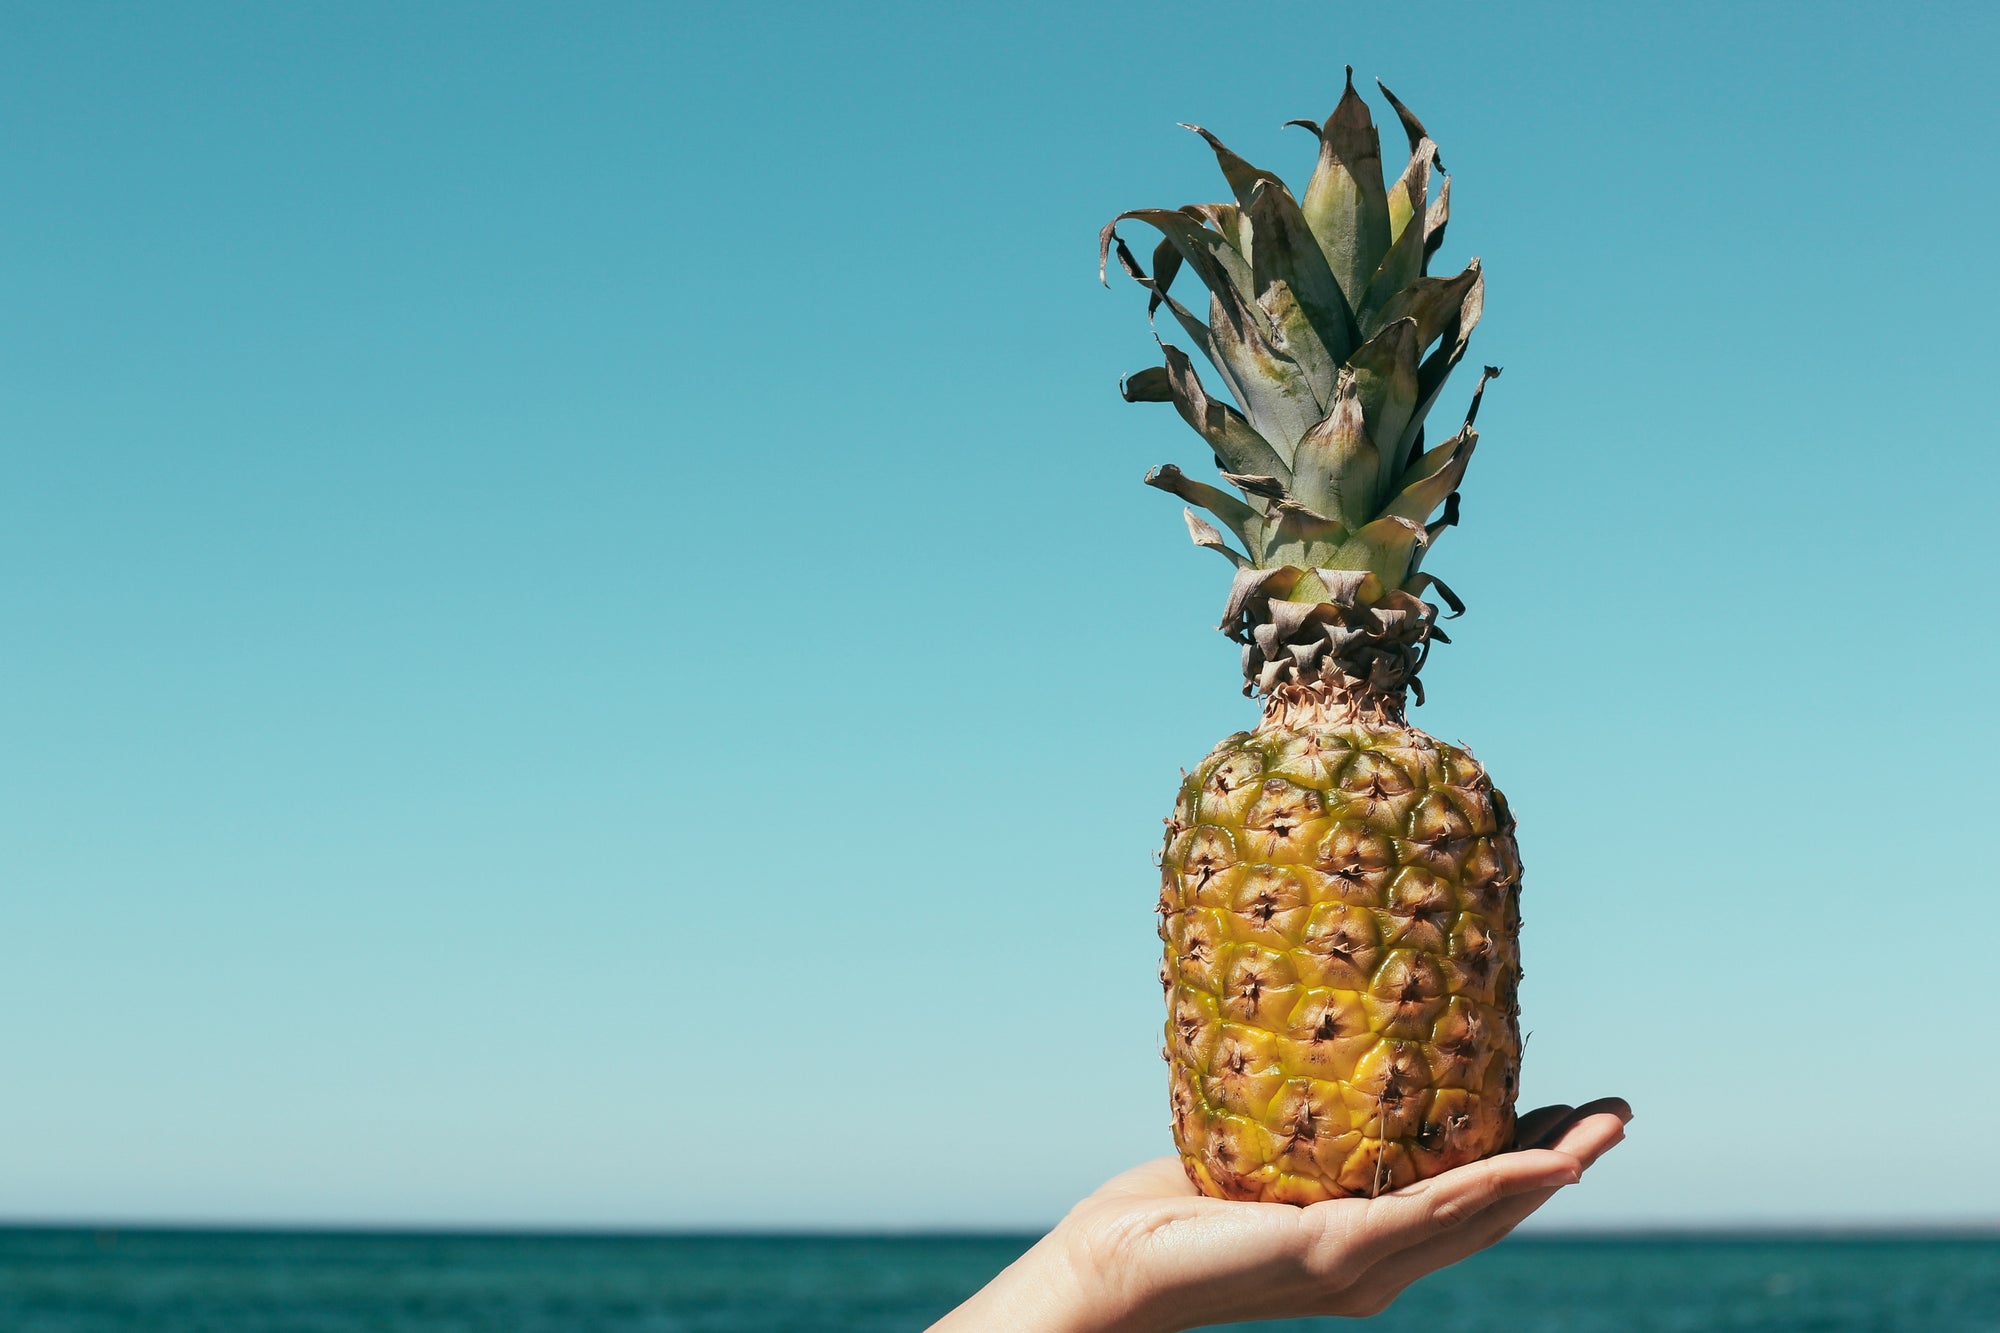 Ananas auf einer Hand vor dem Meer in die Luft gehoben.